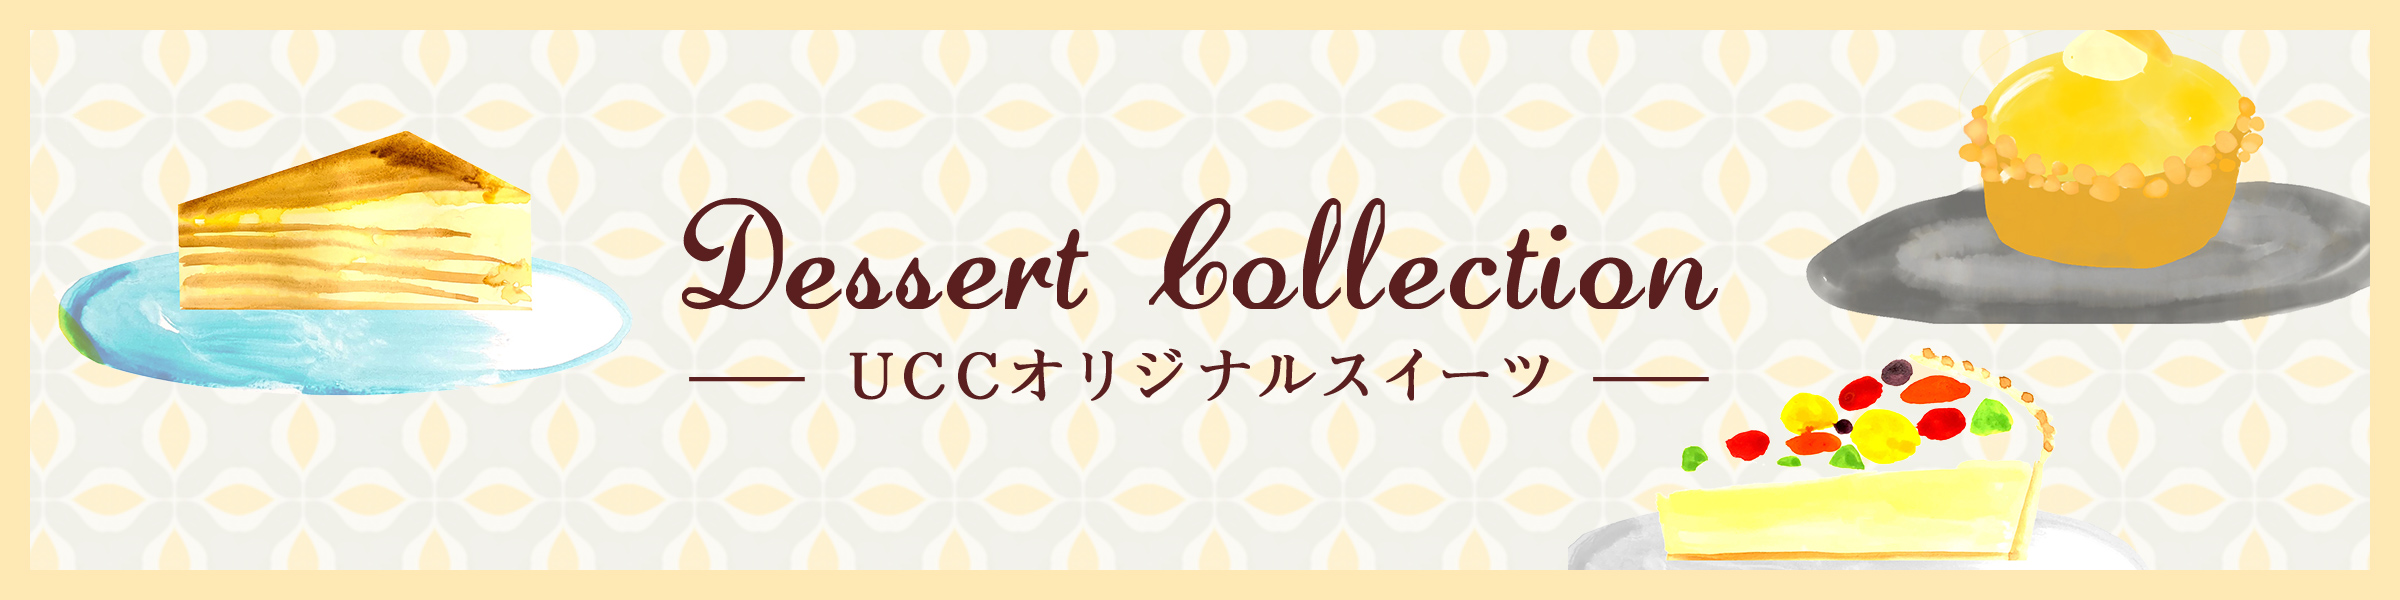 Dessert Collection －UCCオリジナルスイーツー